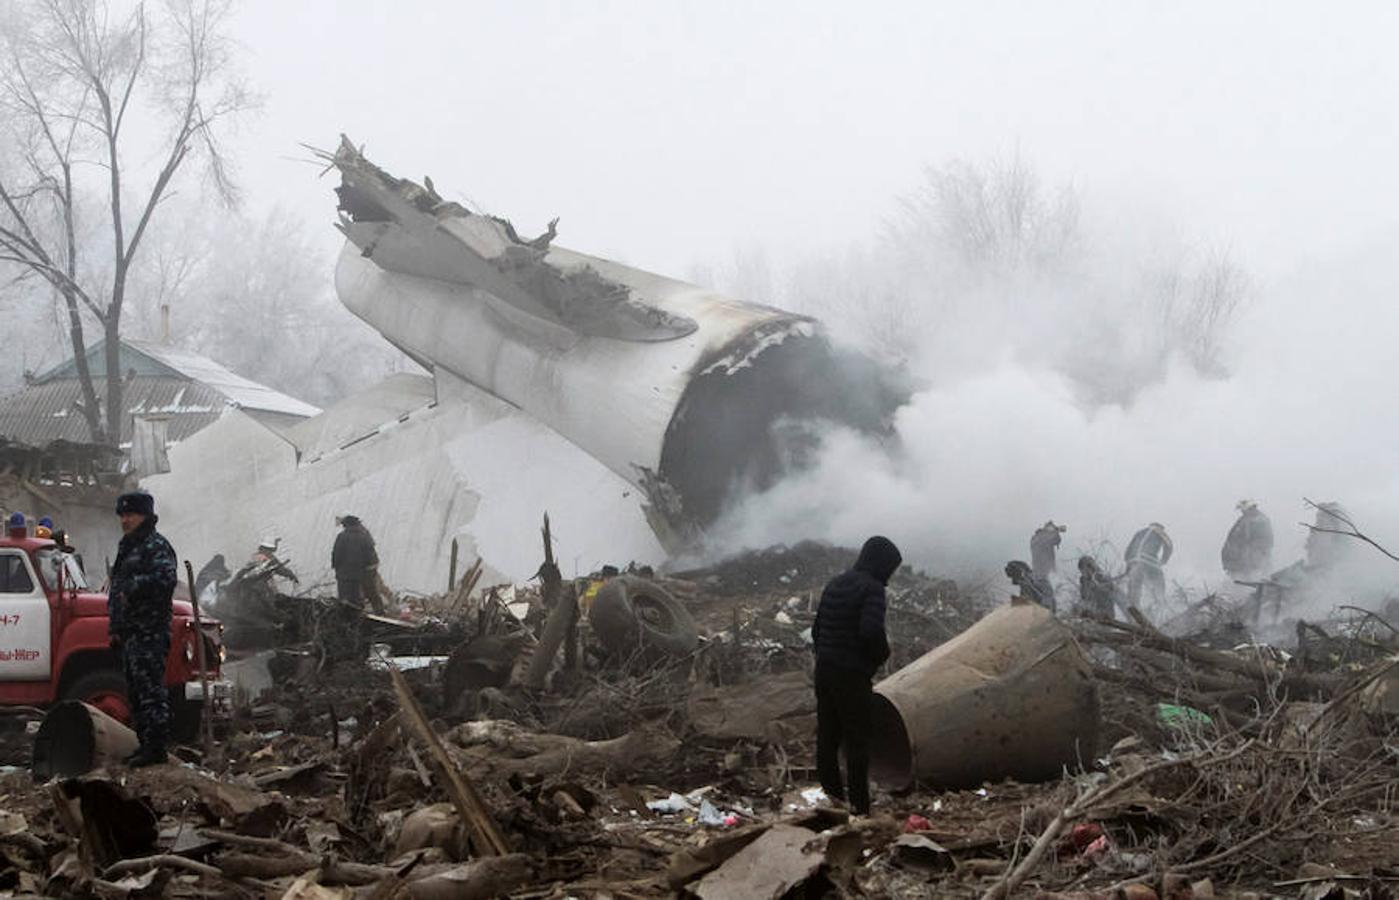 Al menos 37 personas han muerto al estrellarse un avión de carga turco en una zona residencial próxima al aeropuerto de Bishkek, capital de Kirguizistán.